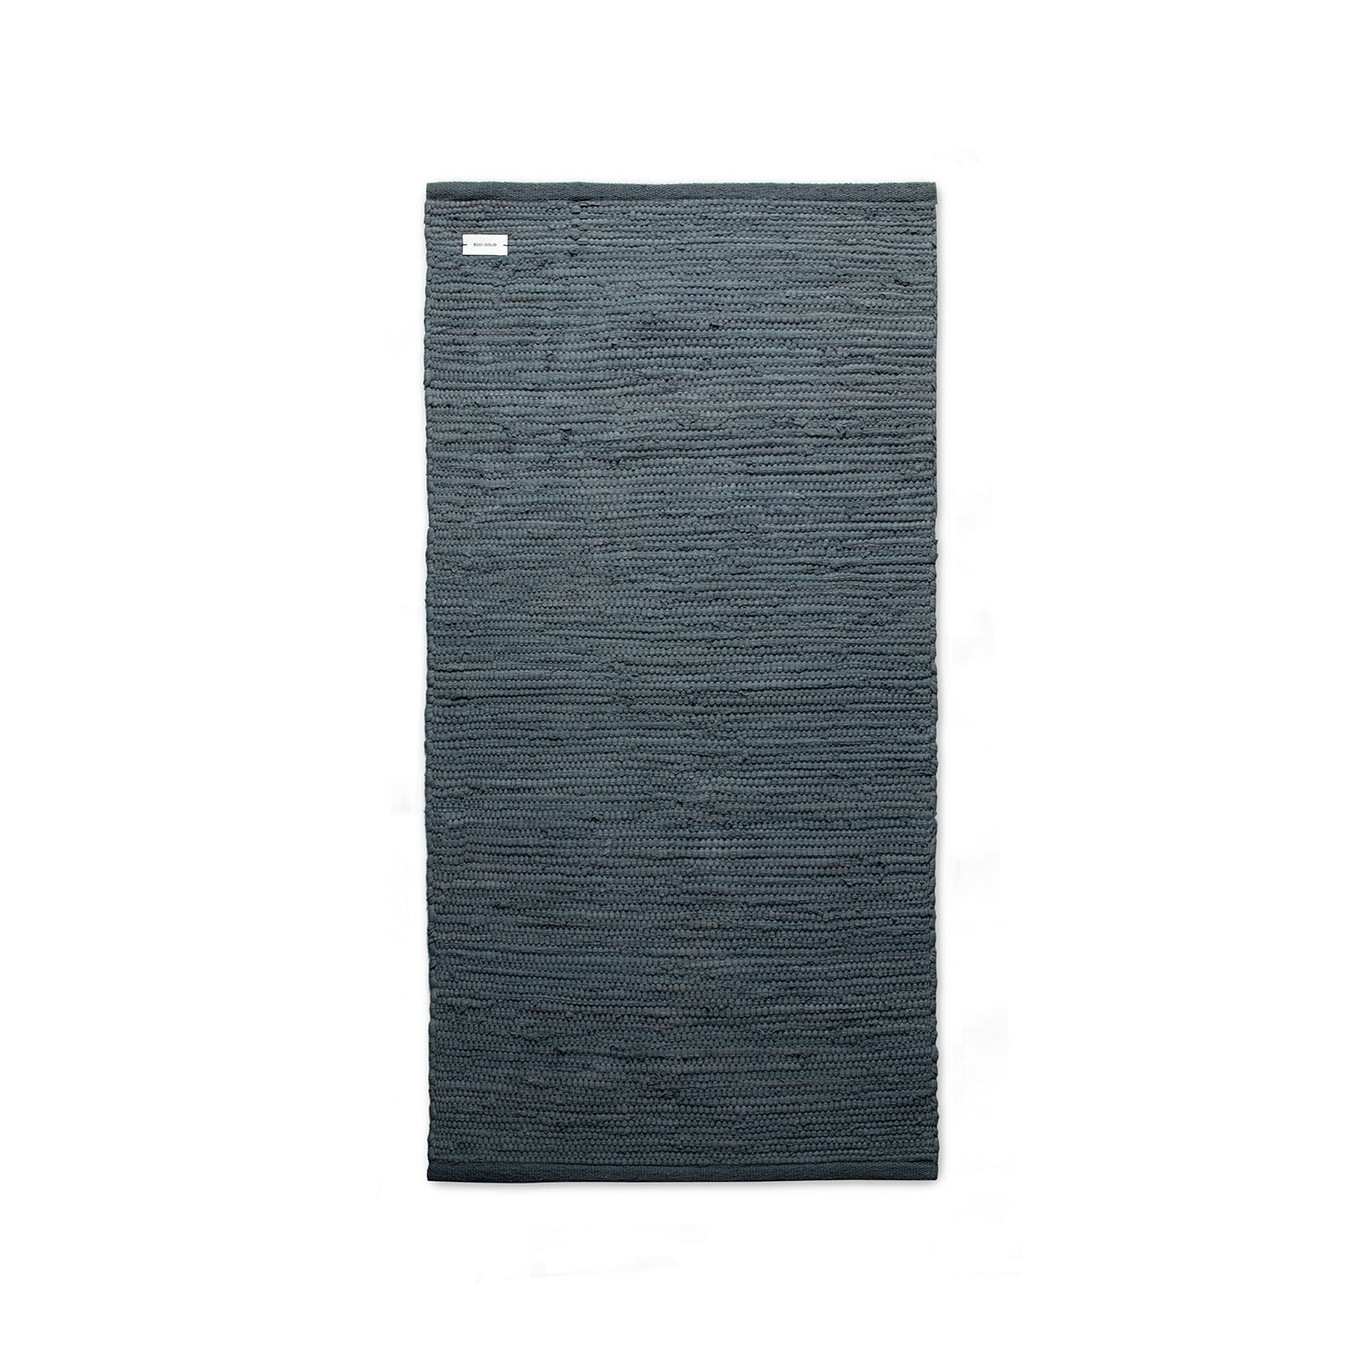 Cotton Matto Steel Grey, 170x240 cm